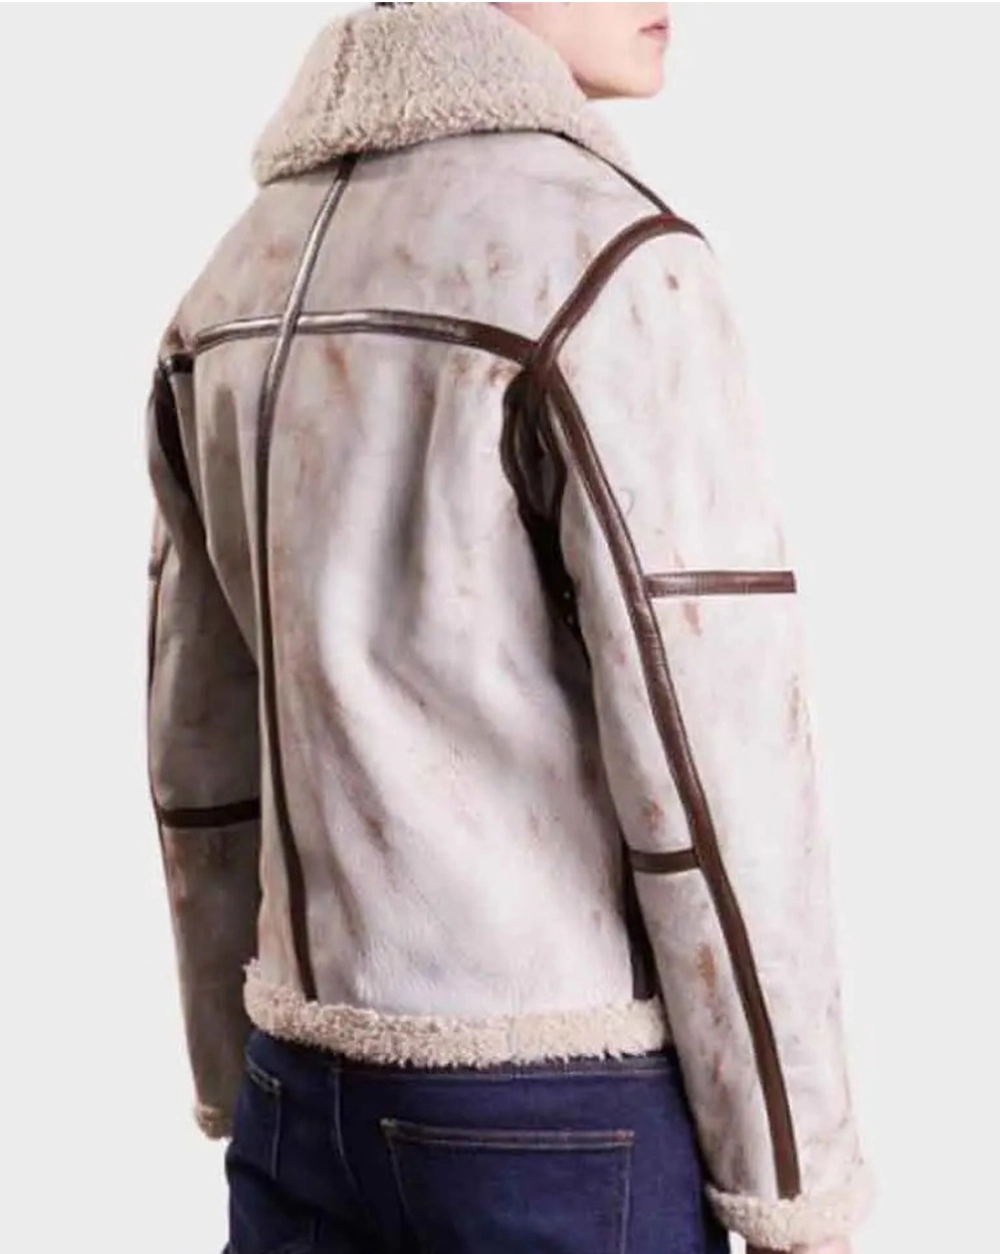 whitewaxed-jacket White Waxed Leather Jacket